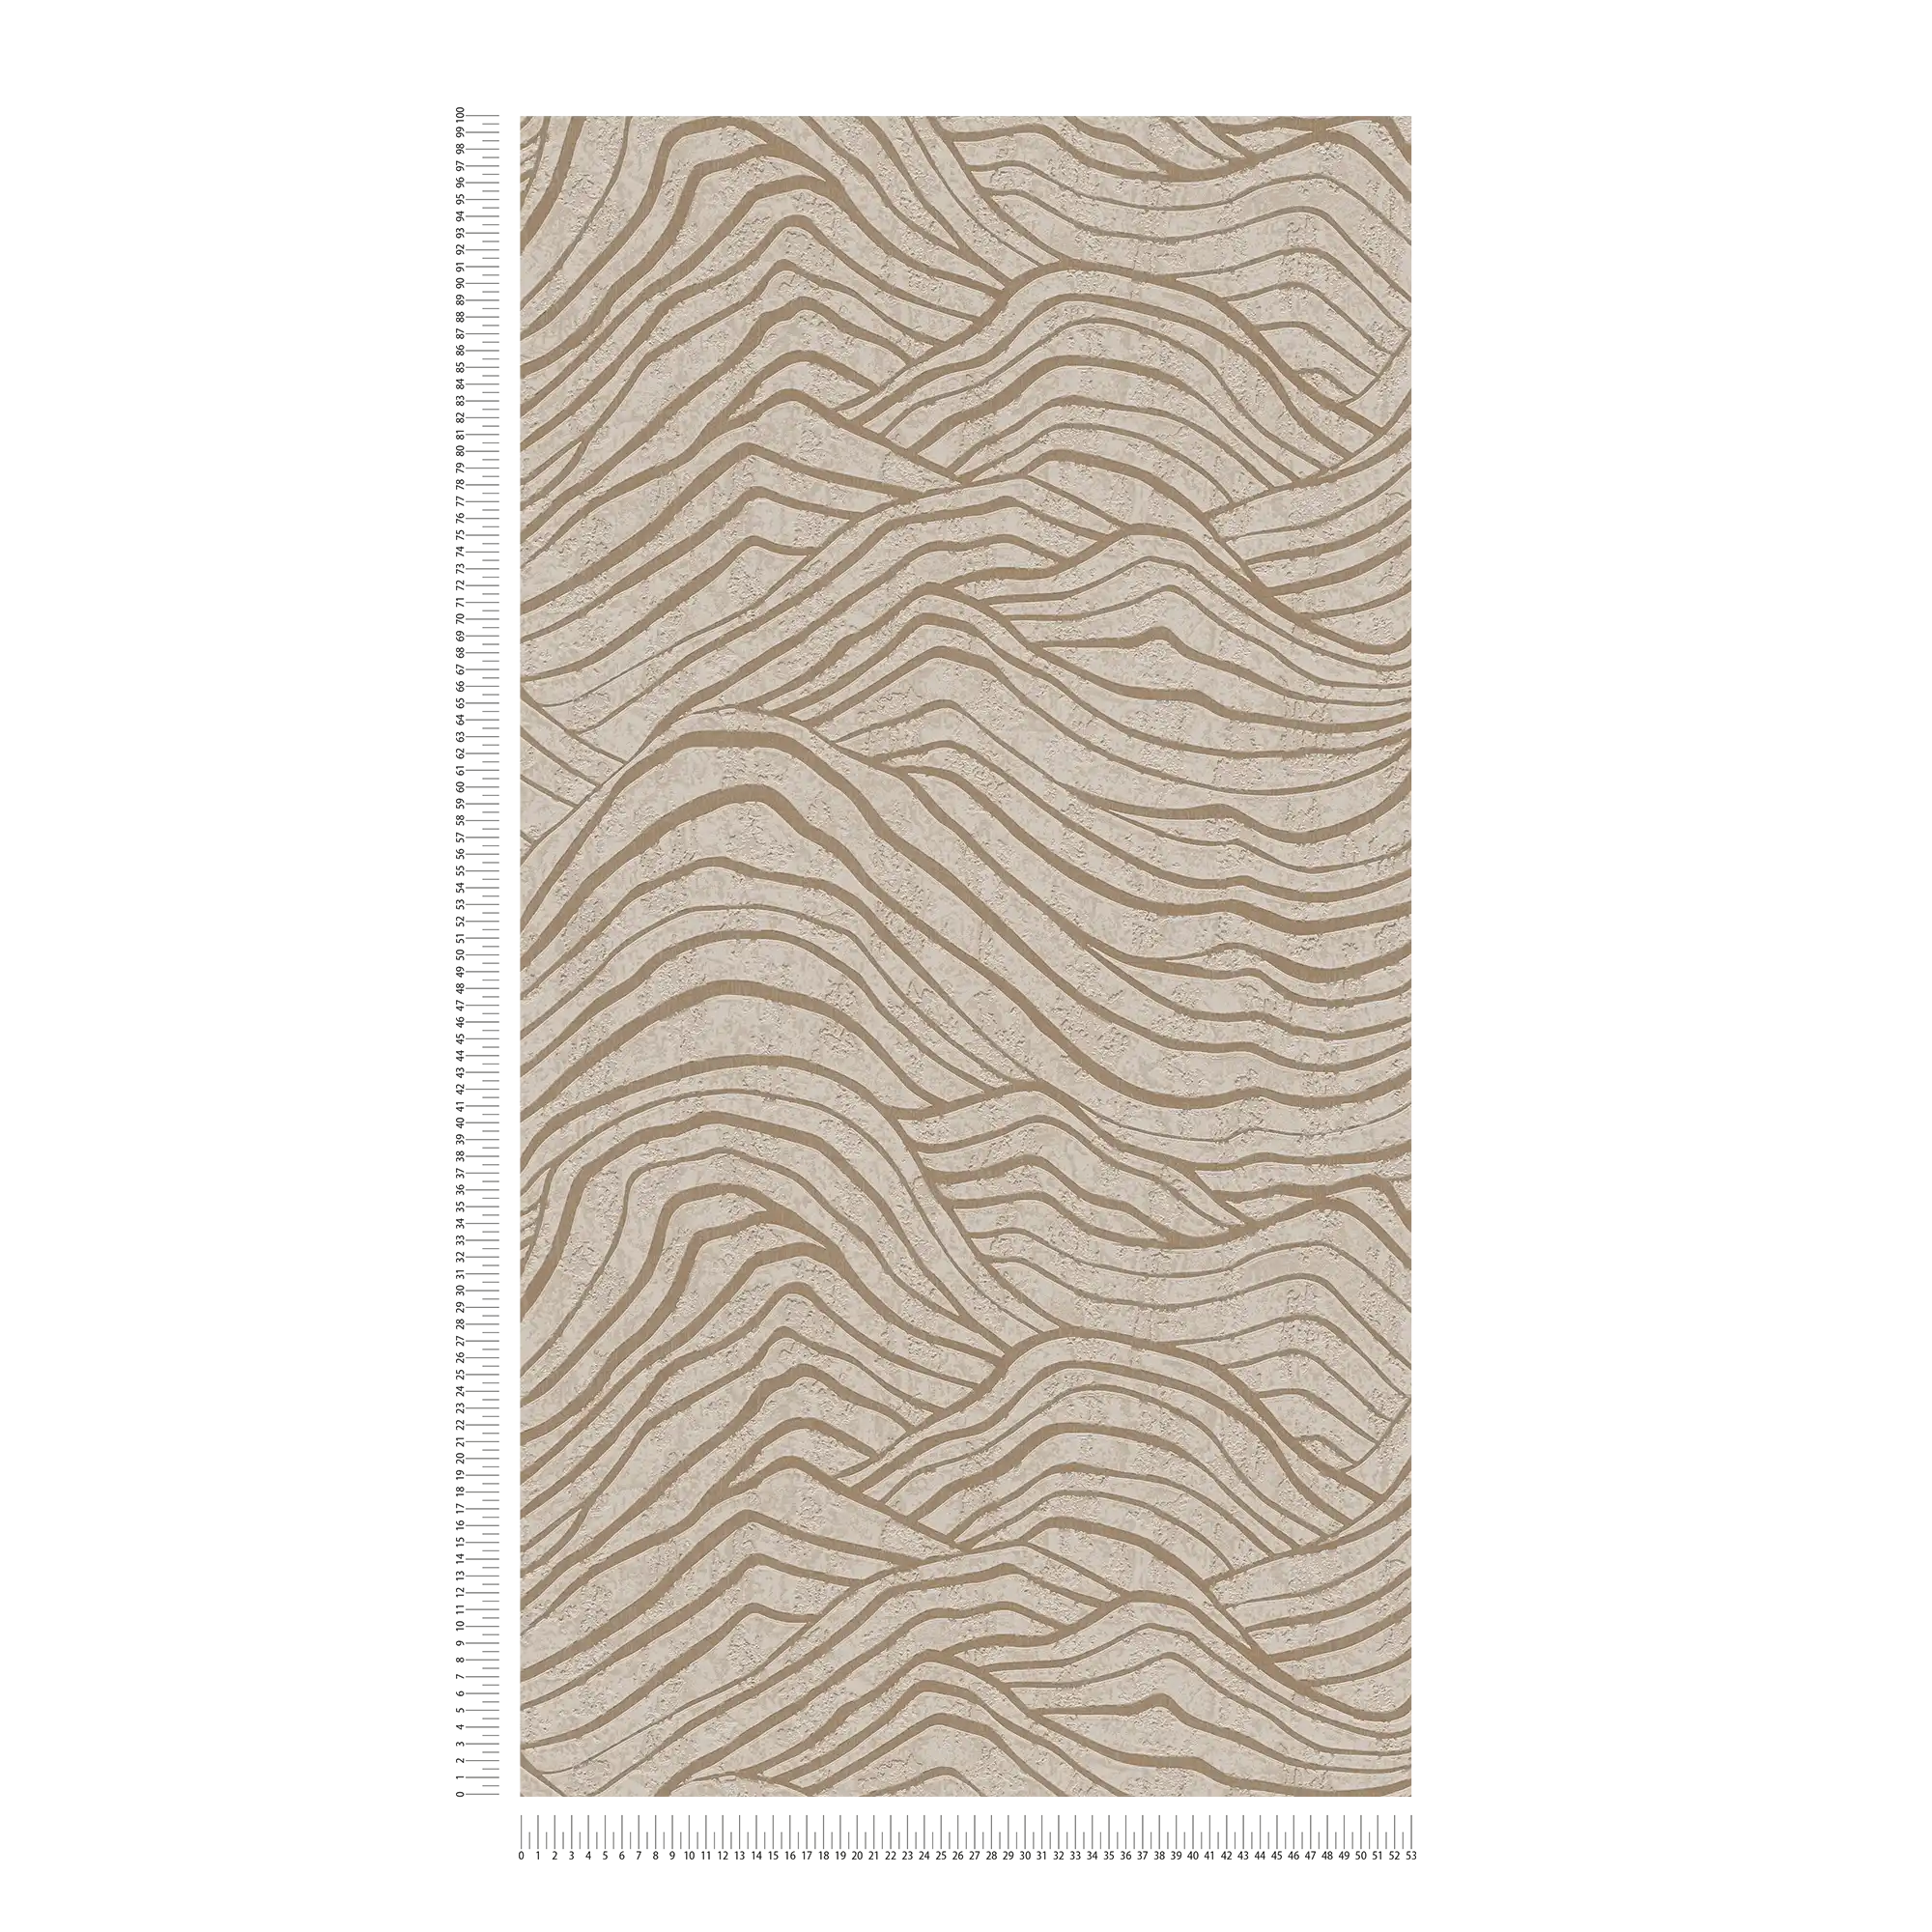             Tapete mit asiatischem Hügel Muster – Beige, Gold, Grau
        